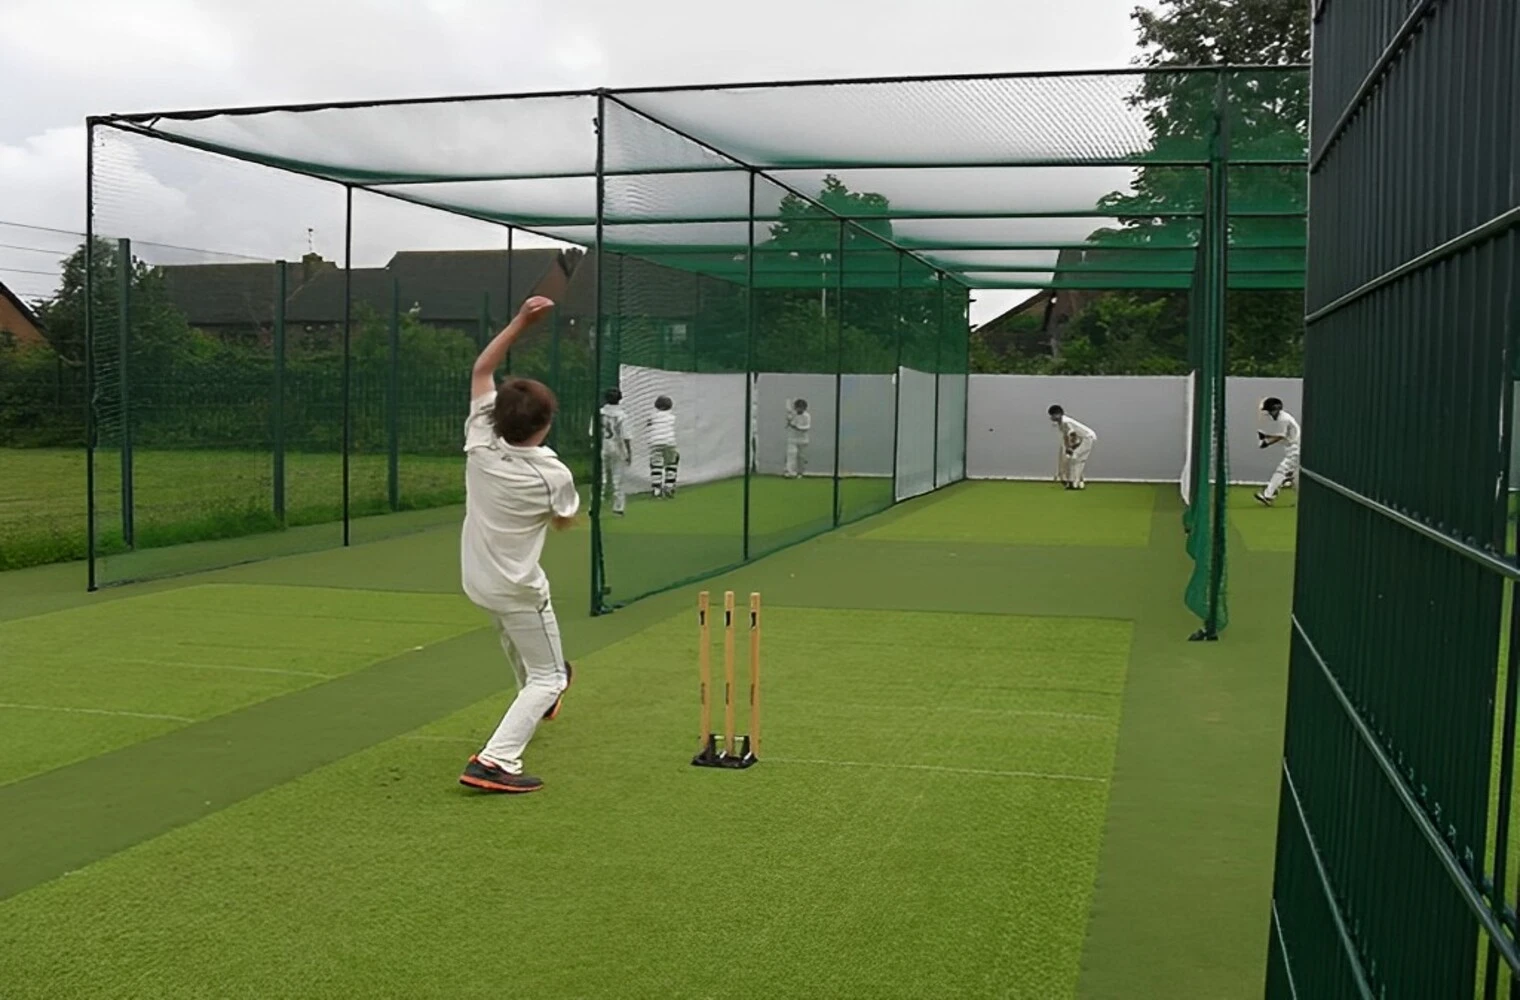 Cricket Net For Practice